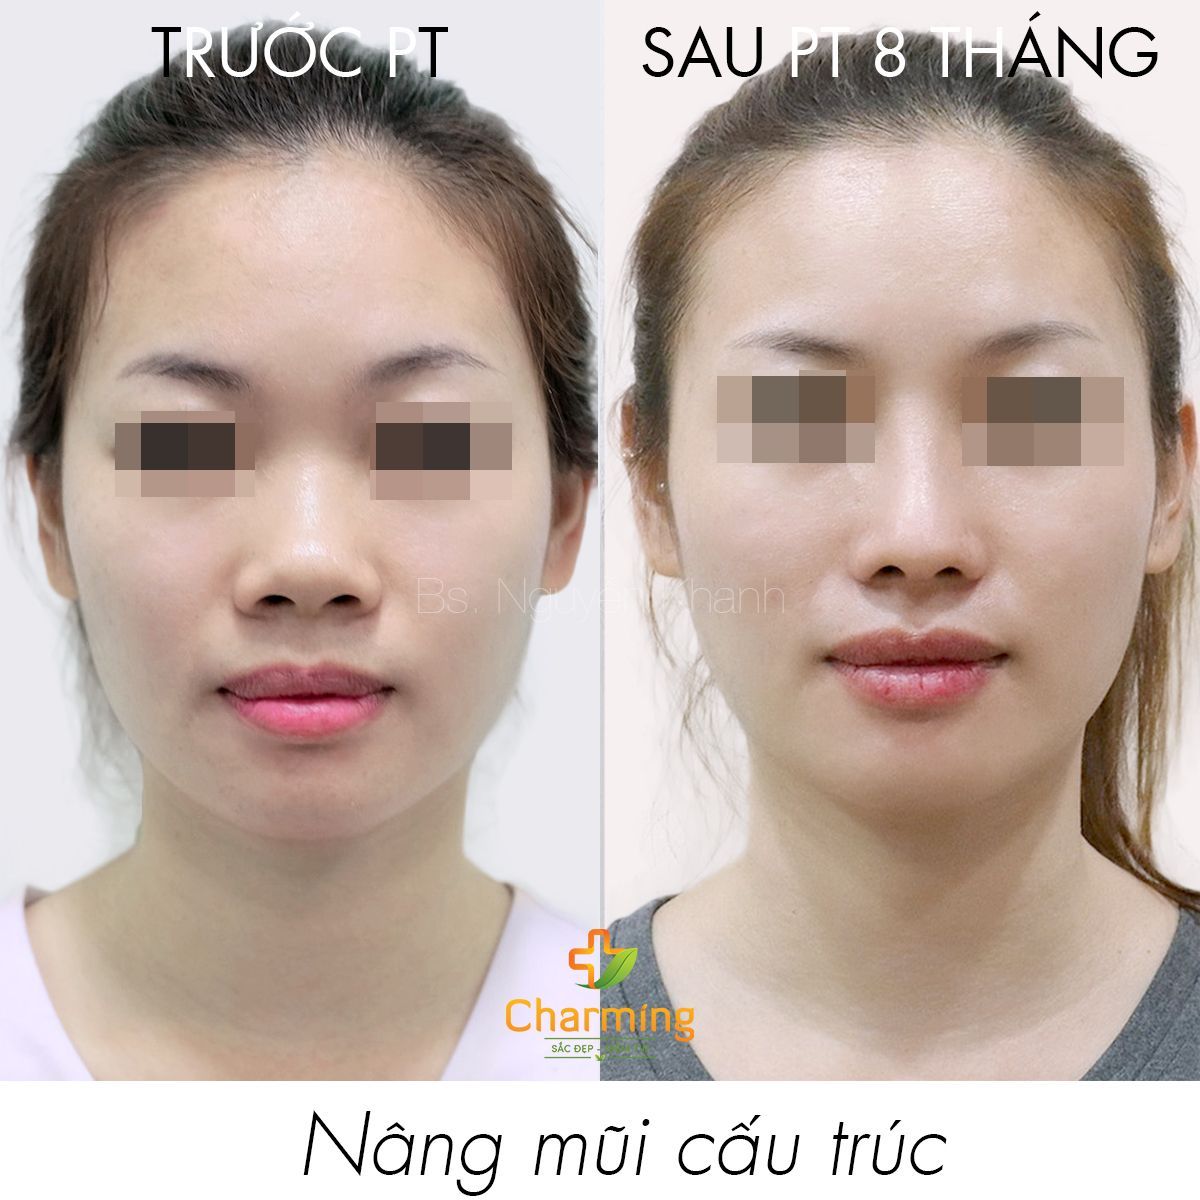 Hình ảnh nâng mũi cấu trúc trước sau 8 tháng Bs Nguyễn Khanh